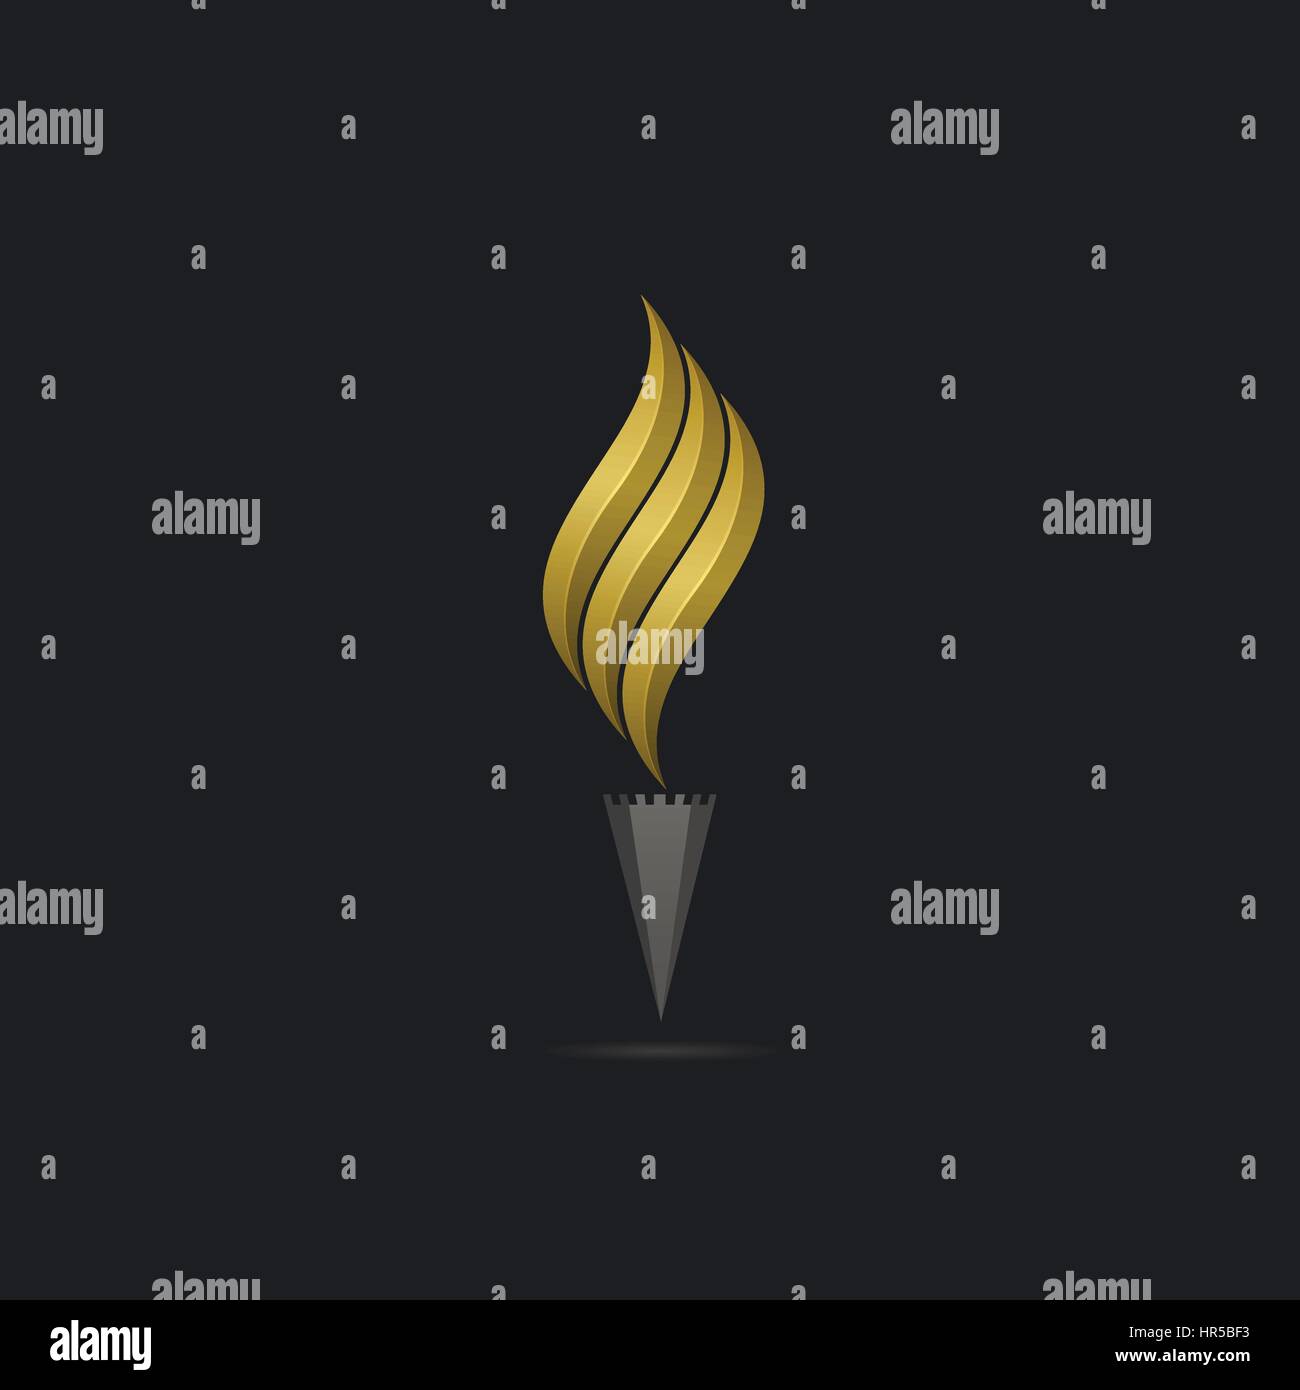 Golden flame logo template Stock Vector